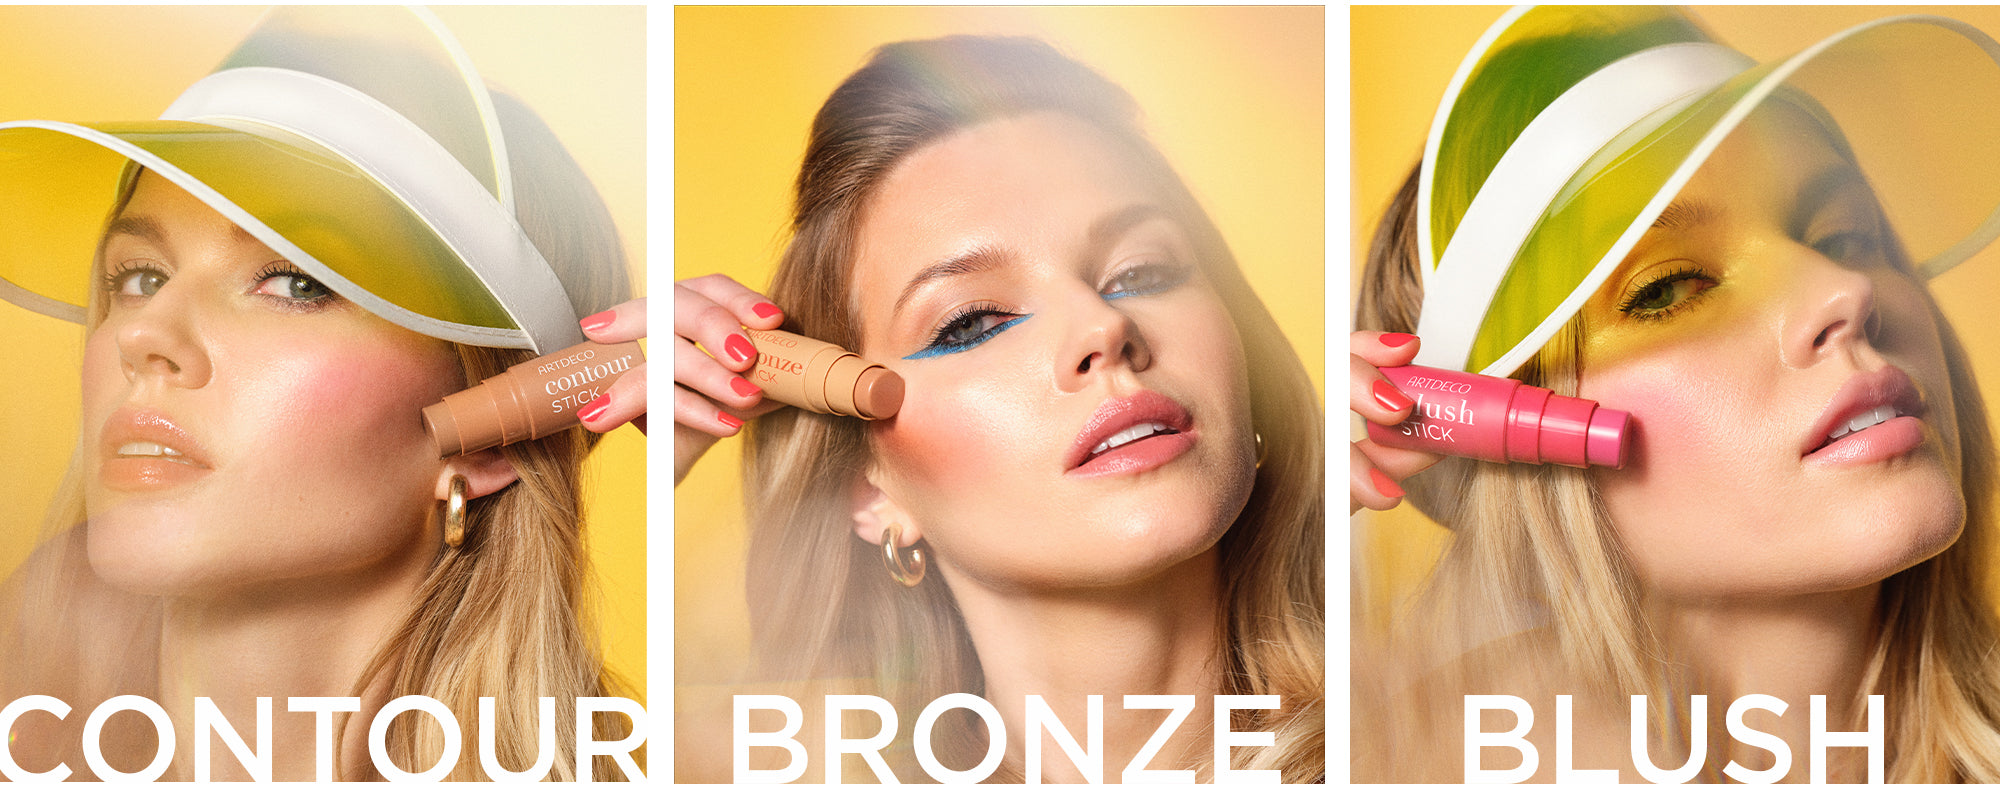 Anwendungsbilder des blonden Models, welches in drei Bildern nebeneinander die jeweilige Anwendung des Blush, Bronze und Contour Stick zeigt